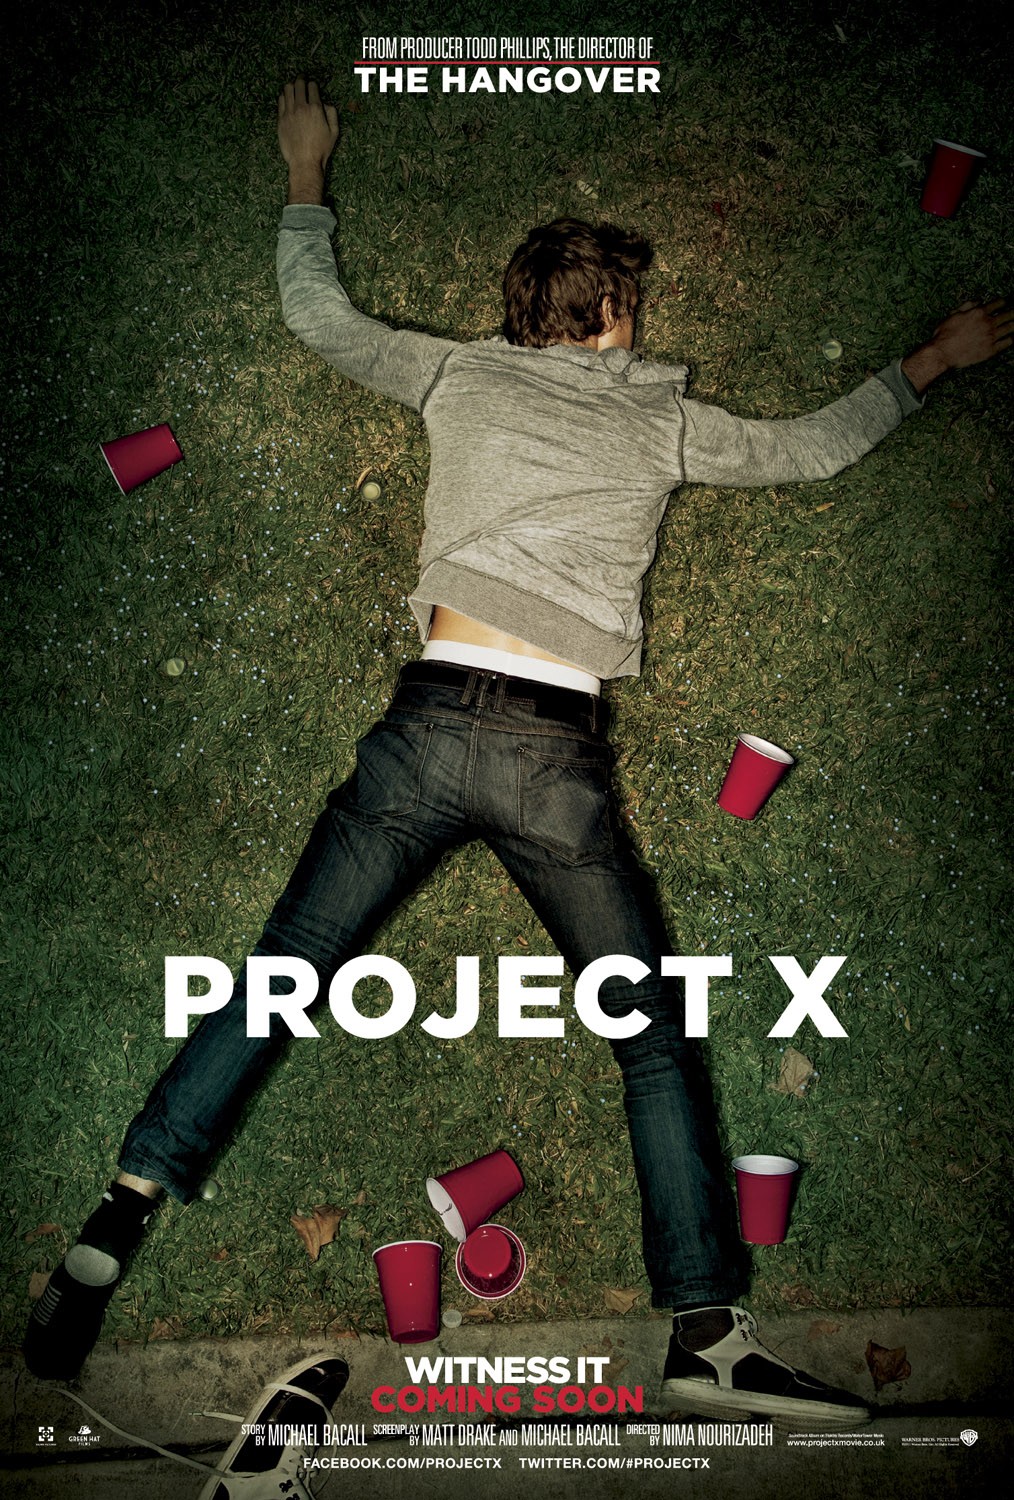 Project X (2012) (/dJNURJDko8Y)